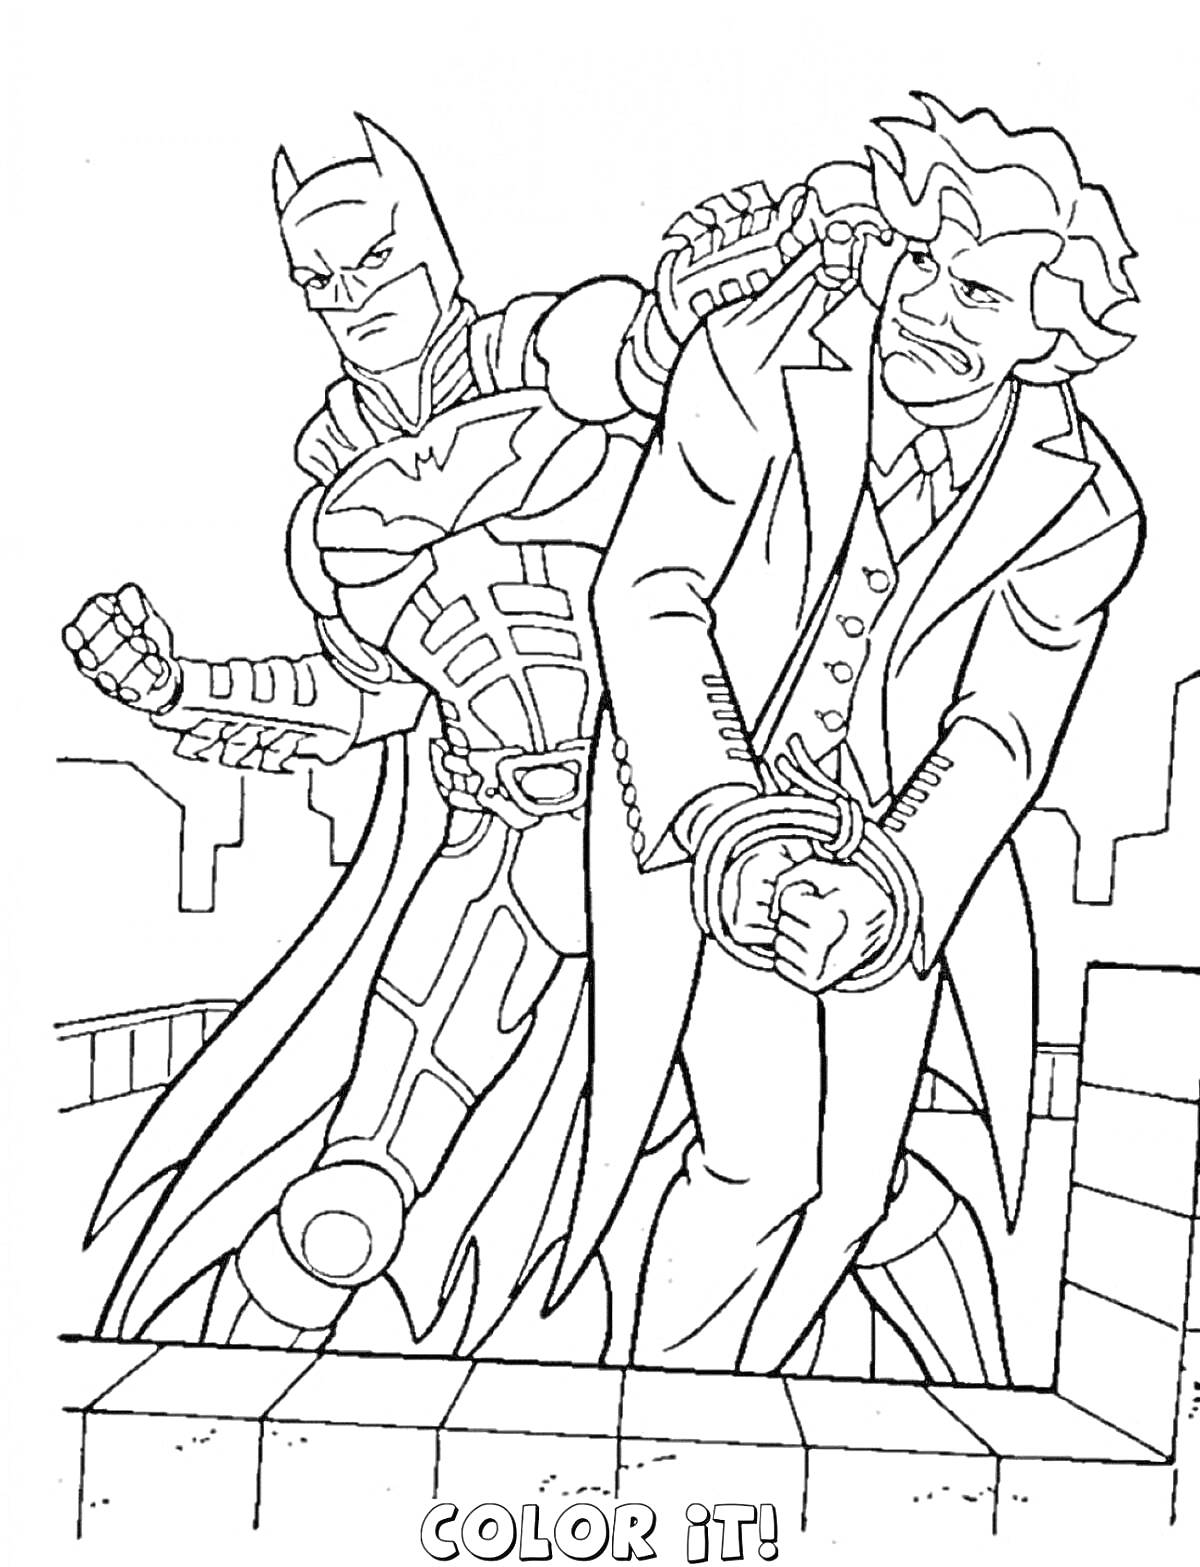 Бэтмен задерживает мужчину в наручниках, городской фон